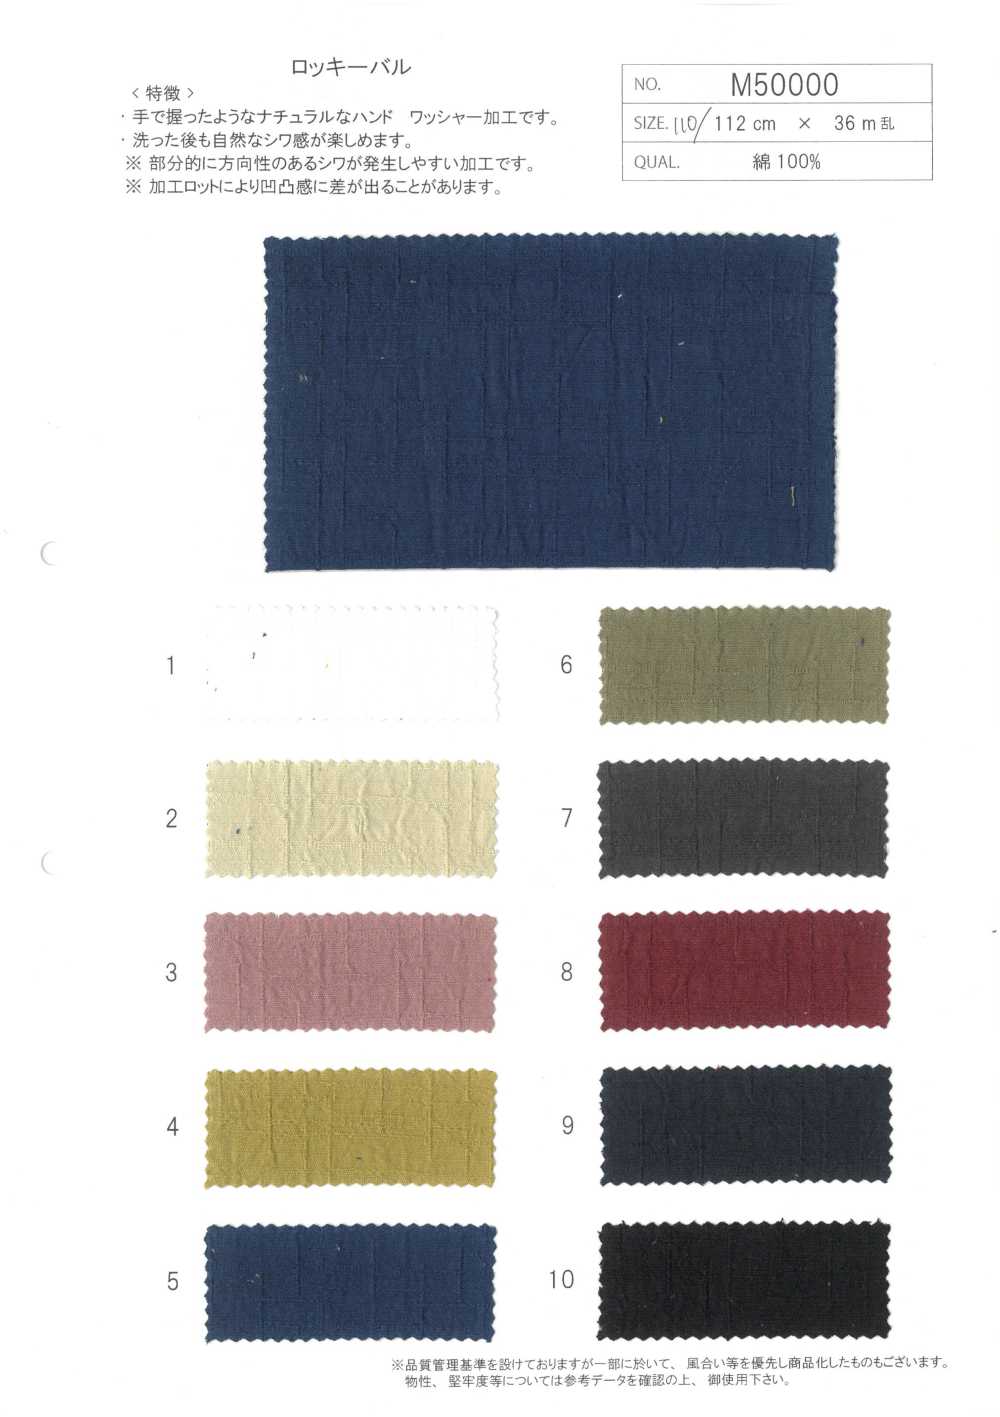 M50000 Verarbeitung Von Baumwoll-Dobby-Catch-Washern[Textilgewebe] Morigiku